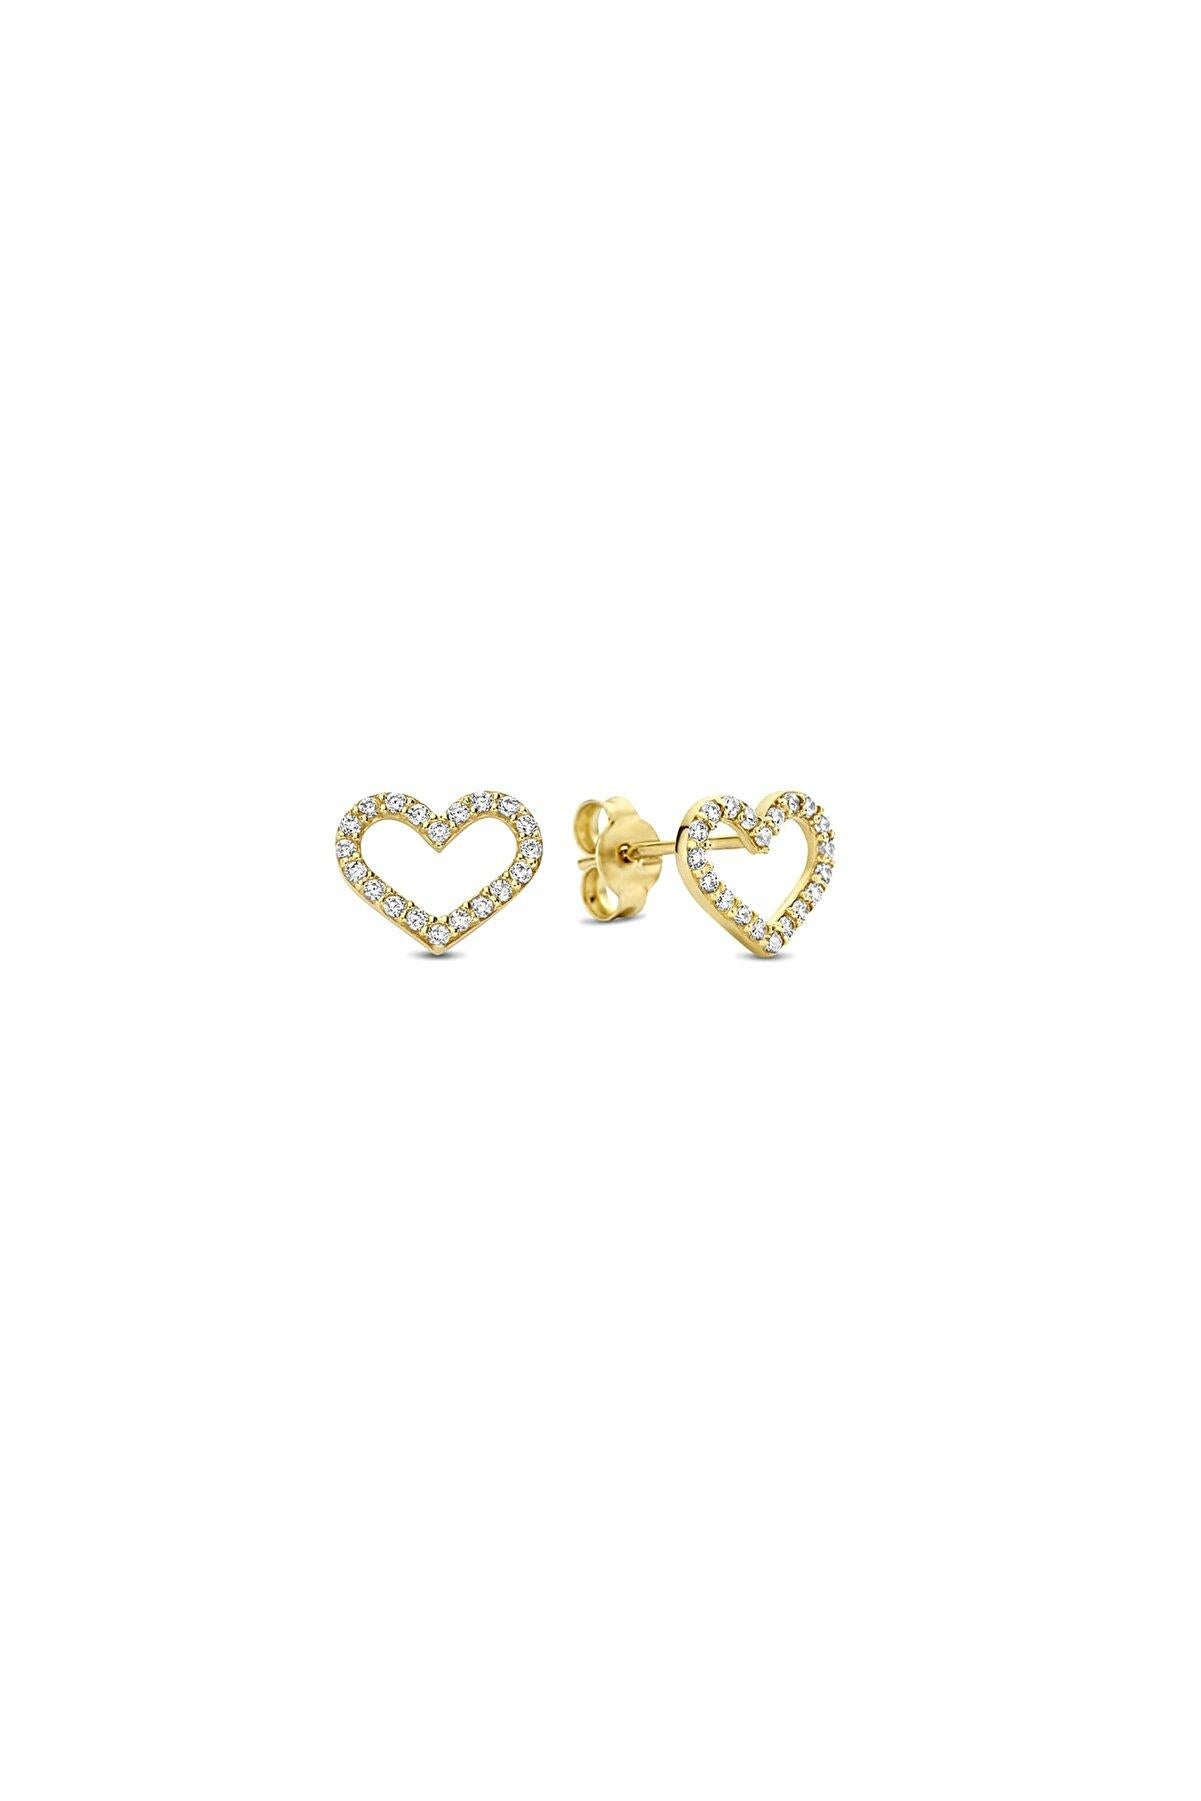 Women's or Men's Heart Earrings Studs in 14k Yellow Gold For Sale